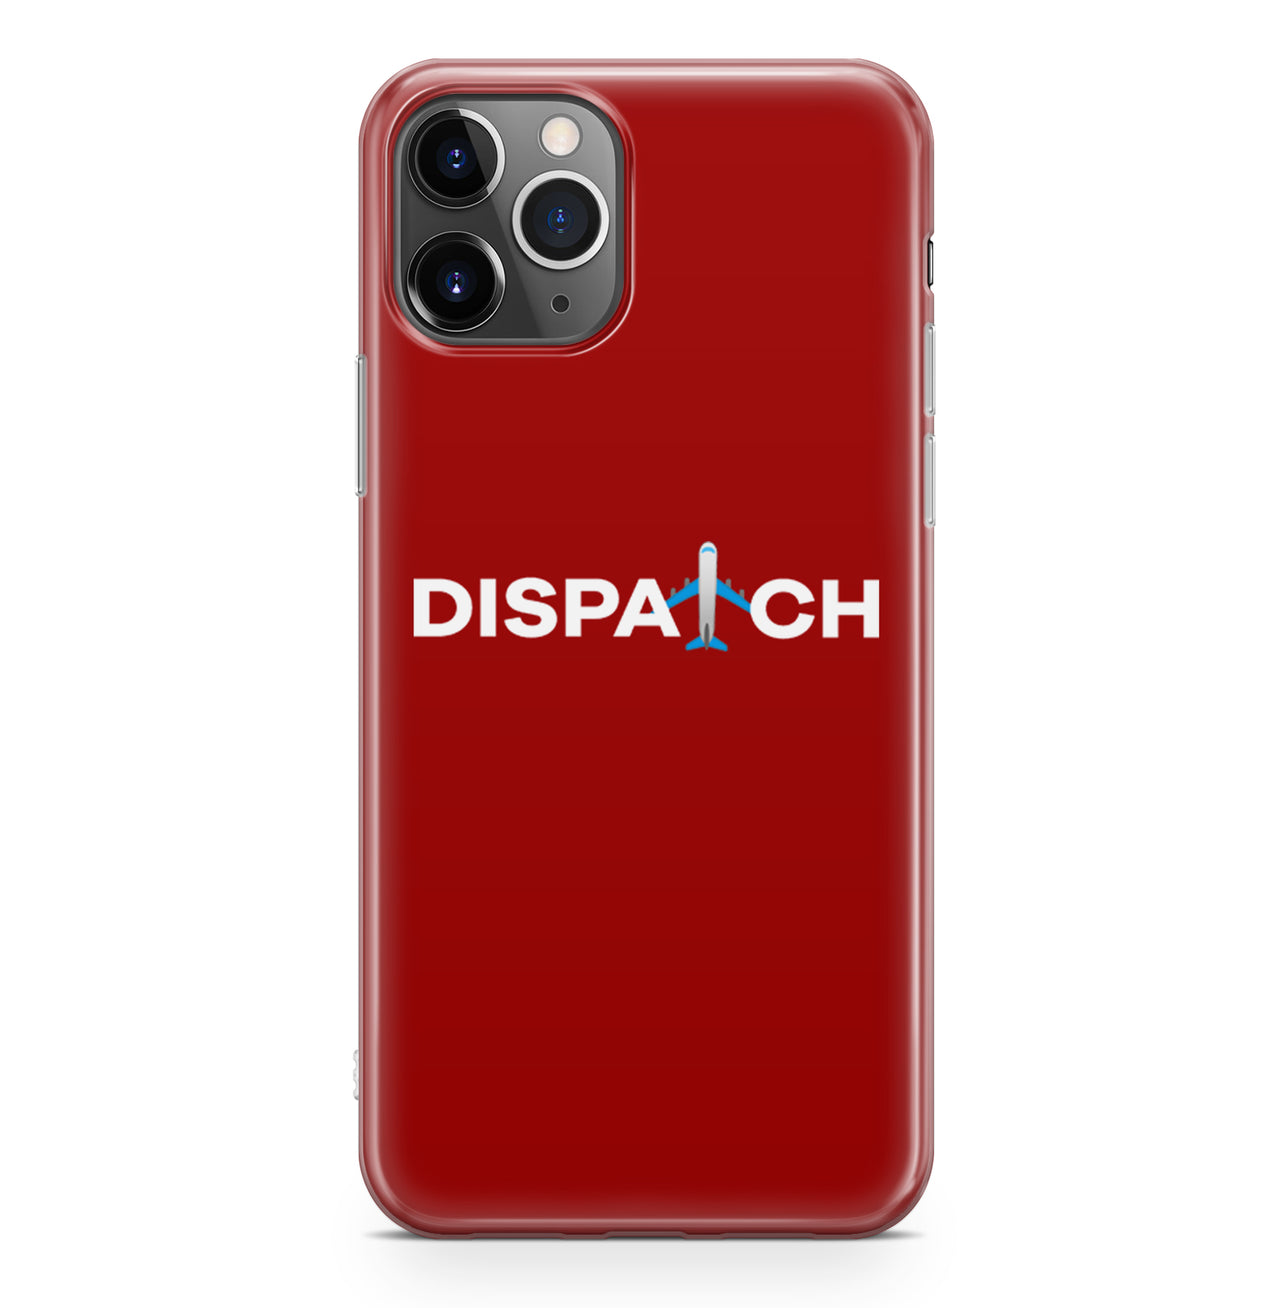 Dispatch Designed iPhone Cases